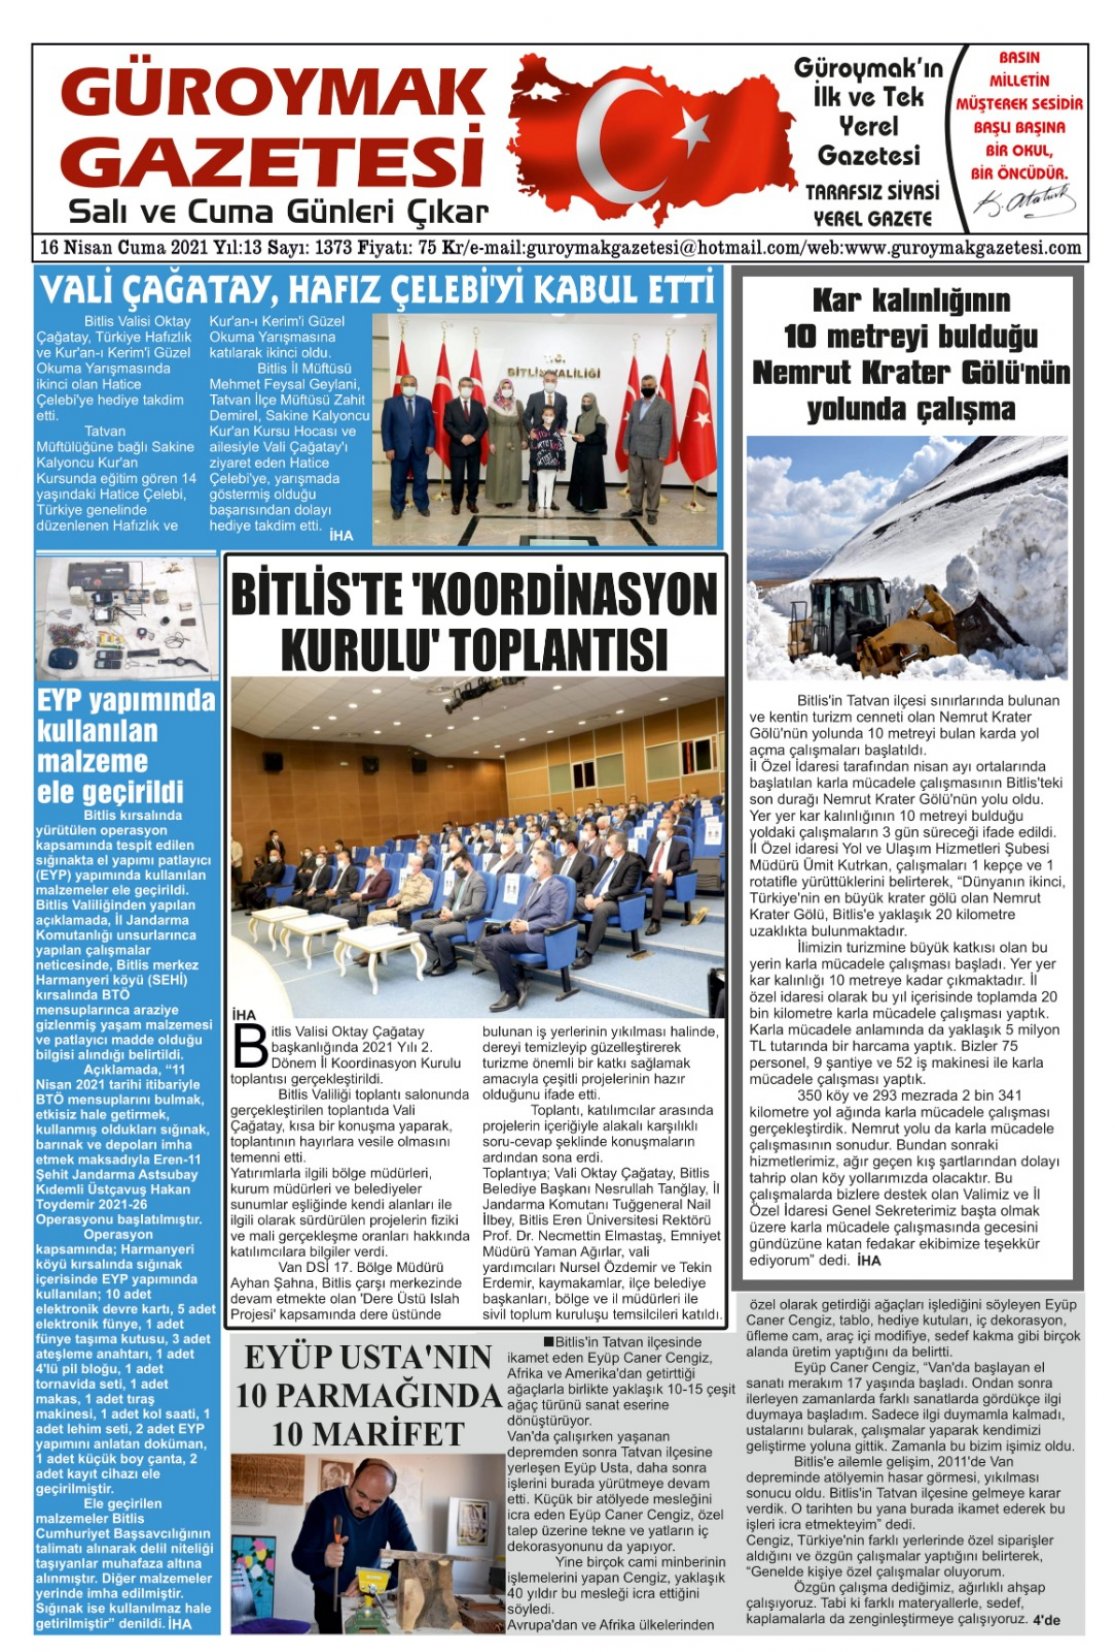 Güroymak Gazetesi WhatsApp Image 2021-04-15 at 14.04.49.jpeg Sayılı Gazete Küpürü